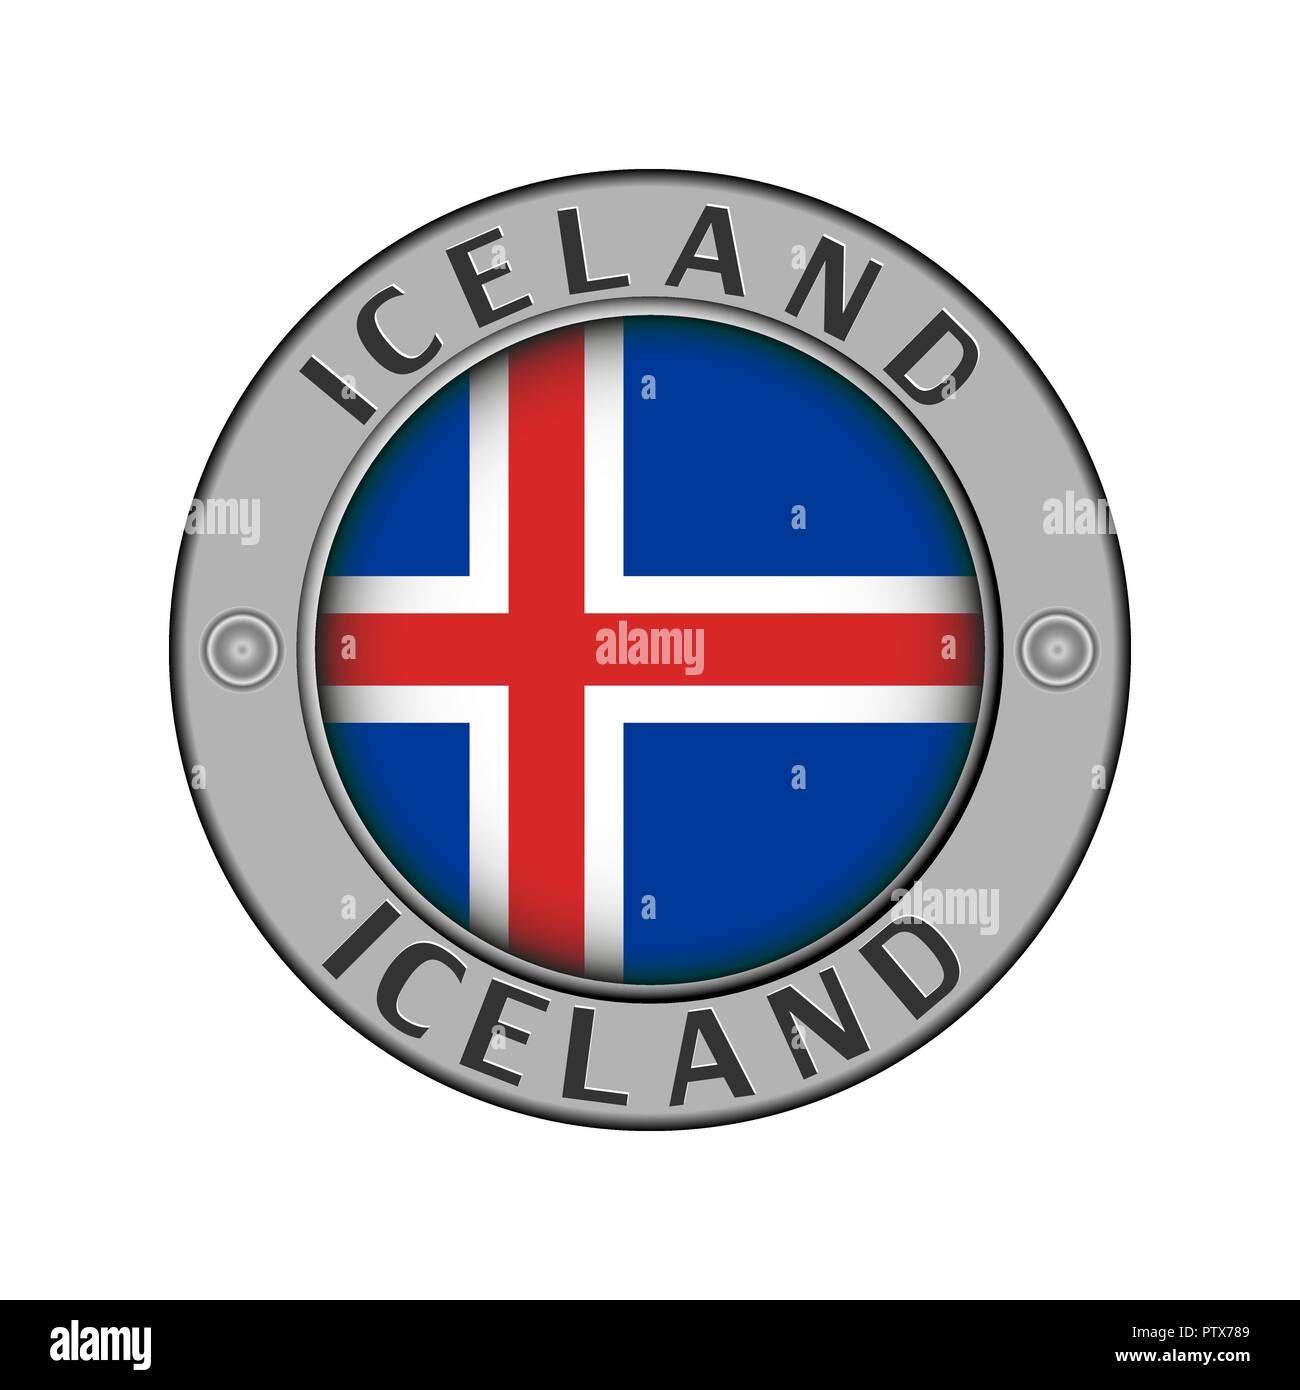 Rotondo di metallo medaglione con il nome del paese di Islanda e un indicatore rotondo nel centro Illustrazione Vettoriale